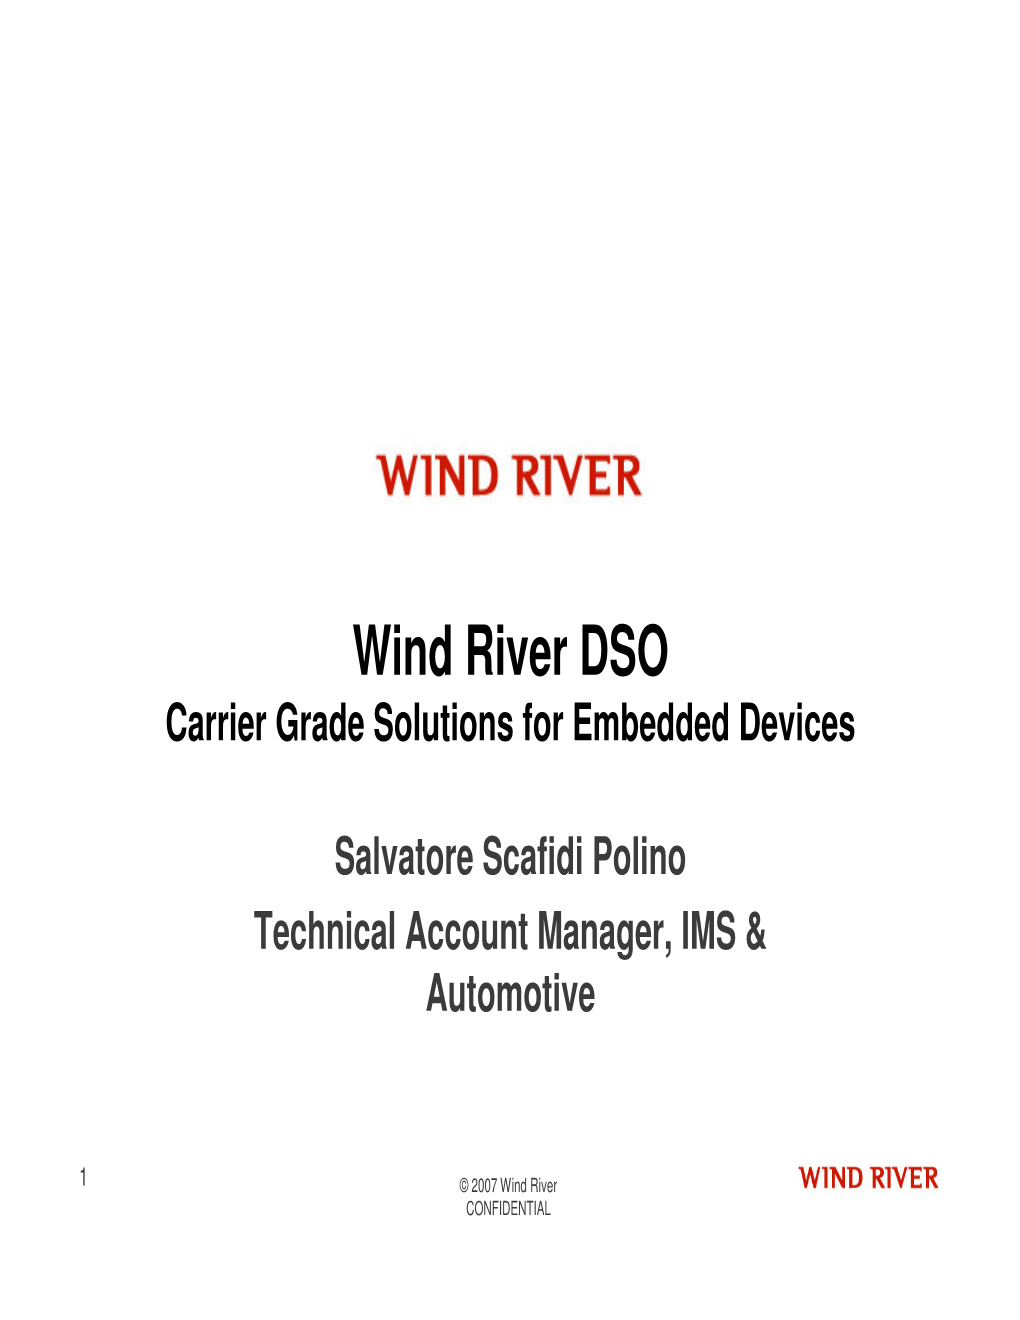 Vxworks Wind River Linux